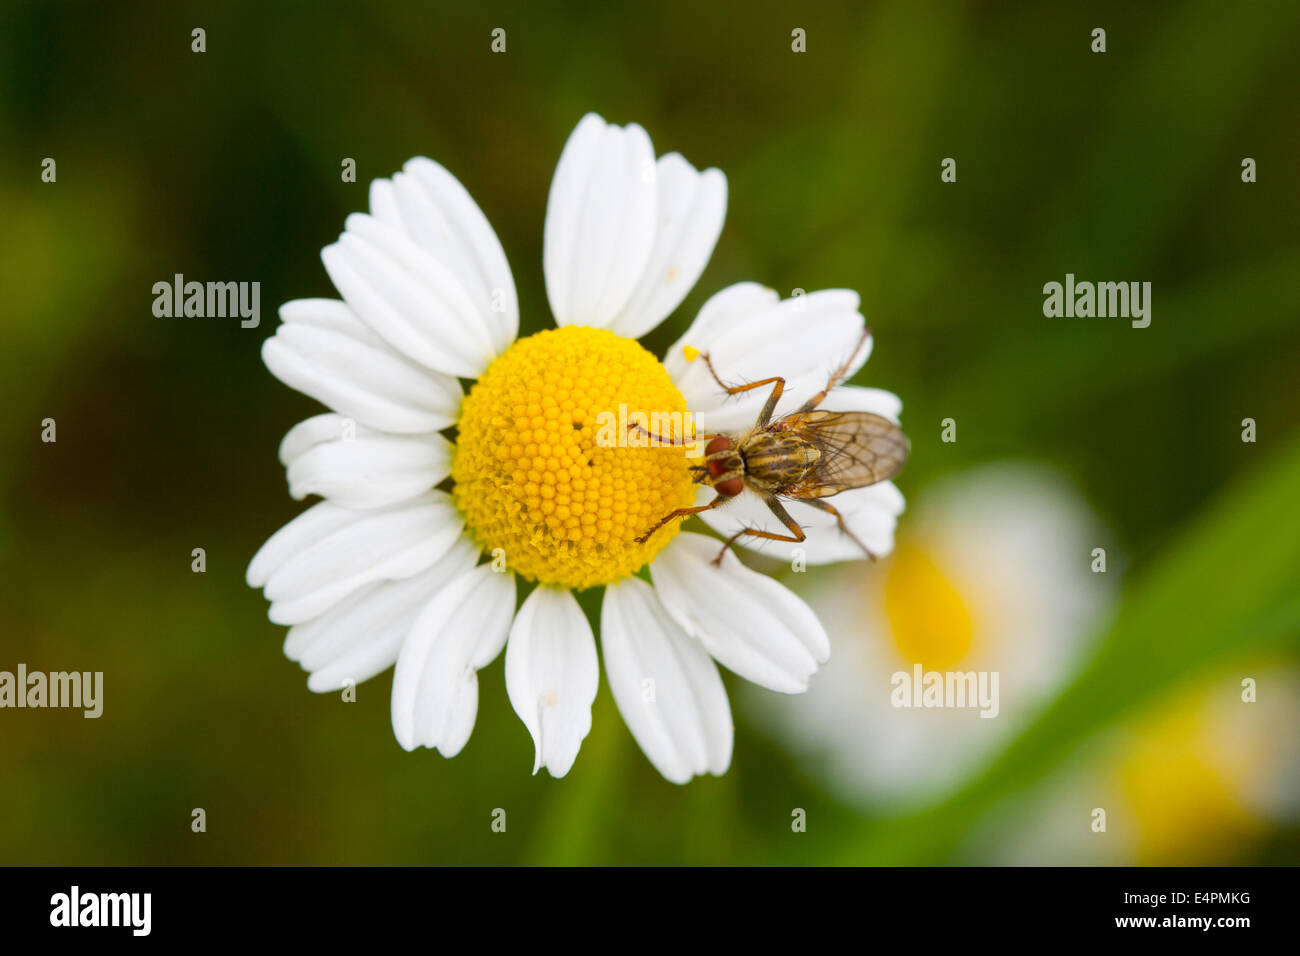 Fliege auf einer Blüte Foto Stock